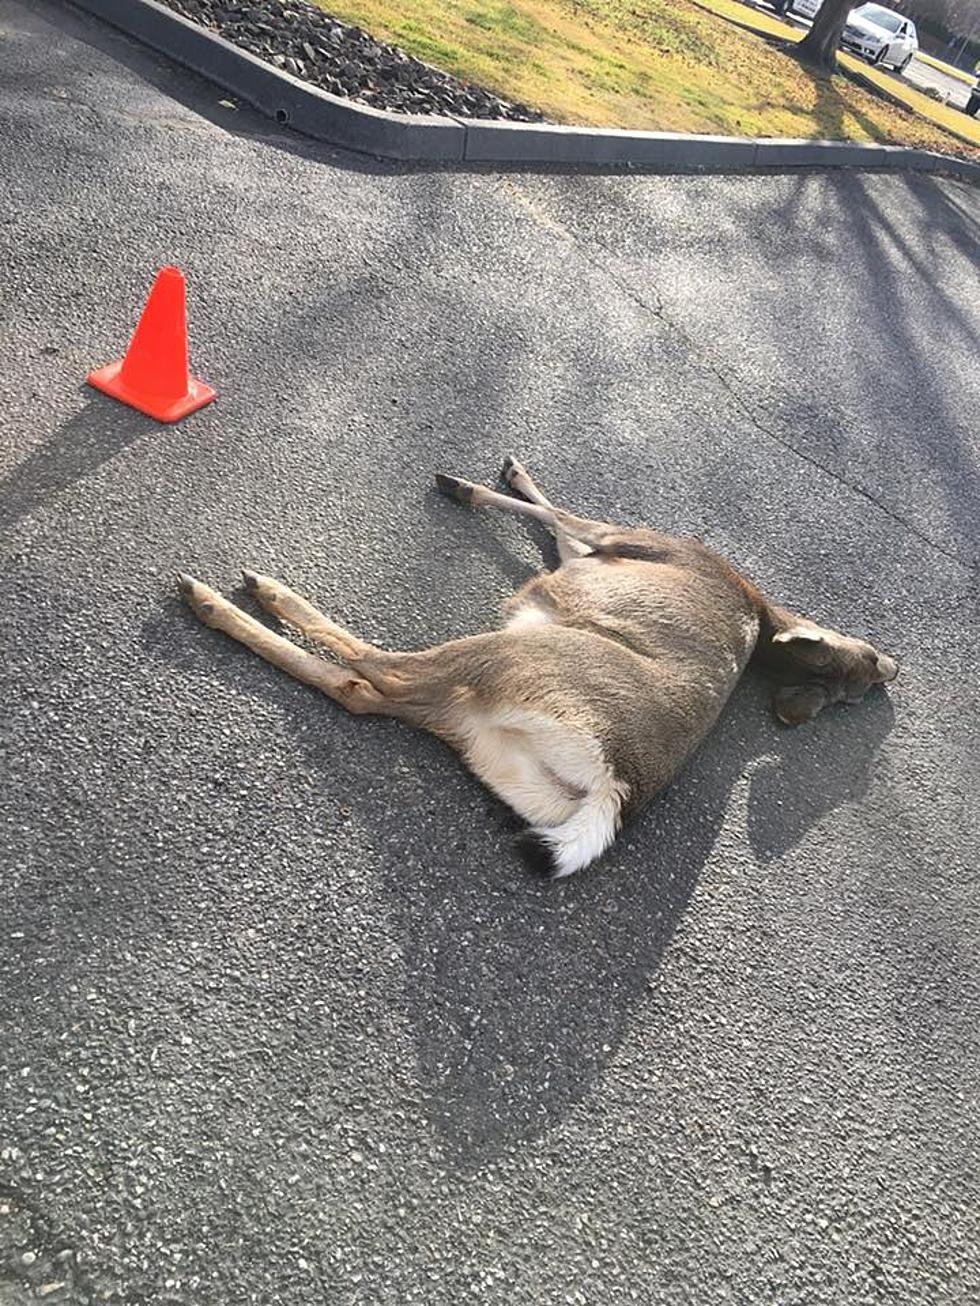 Oh Deer! Wildlife Encounters on the Increase in Tri-Cities